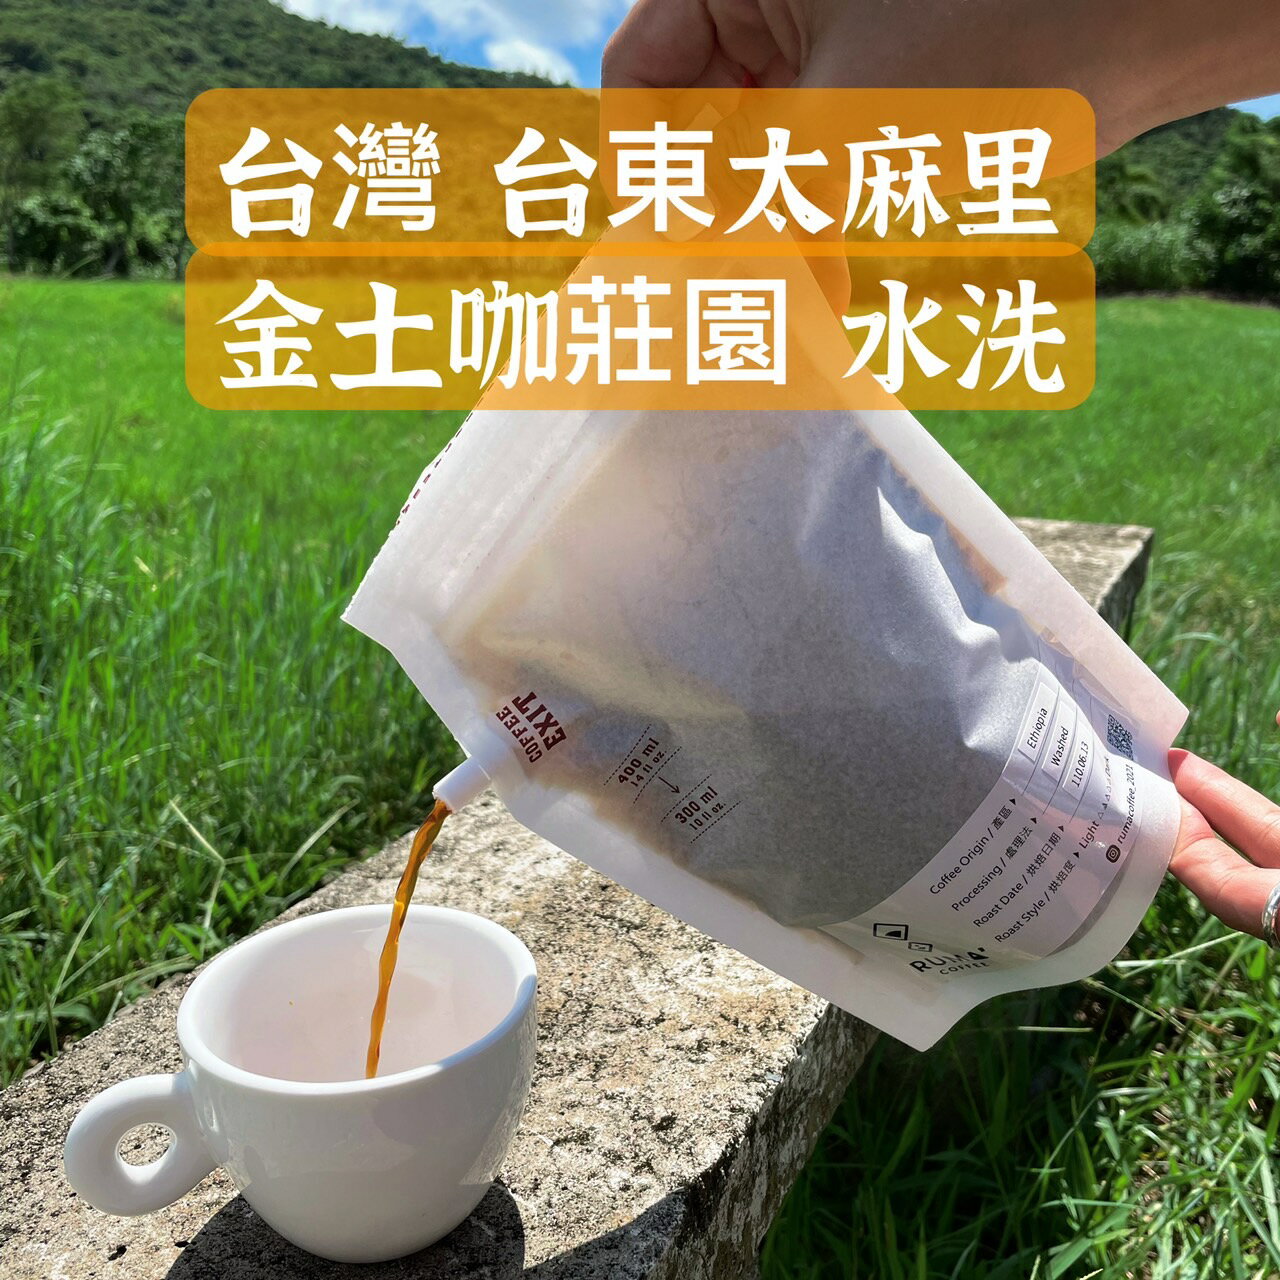 【兩件8折】咖啡 紙啡機 露營 戶外,台灣咖啡 台東莊園 金土咖莊園 水洗 (250ml/400ml)